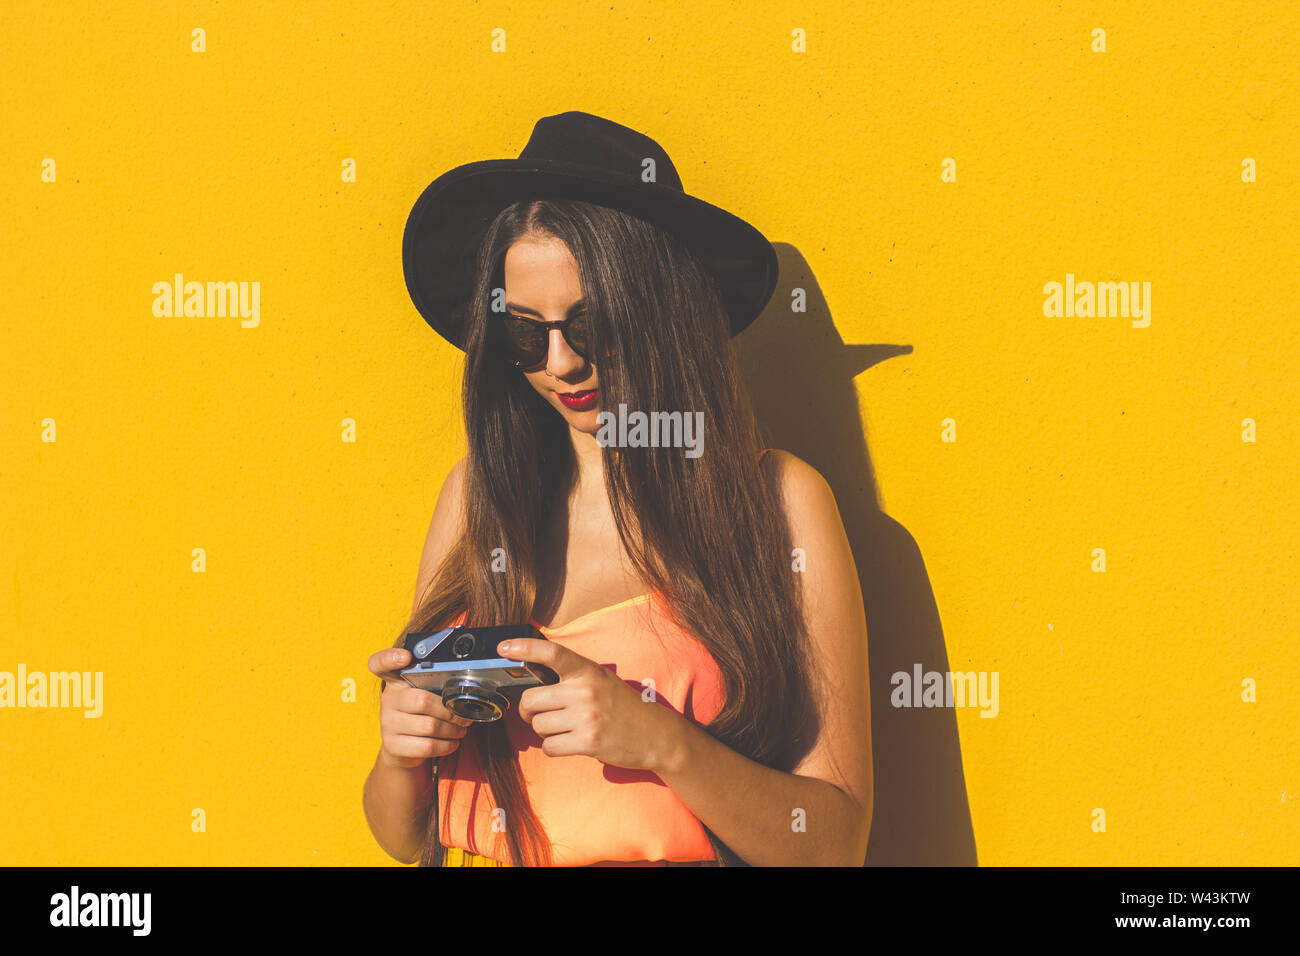 Hipster girl wearing sunglasses à la mode et à l'aide d'un appareil photo vintage Banque D'Images